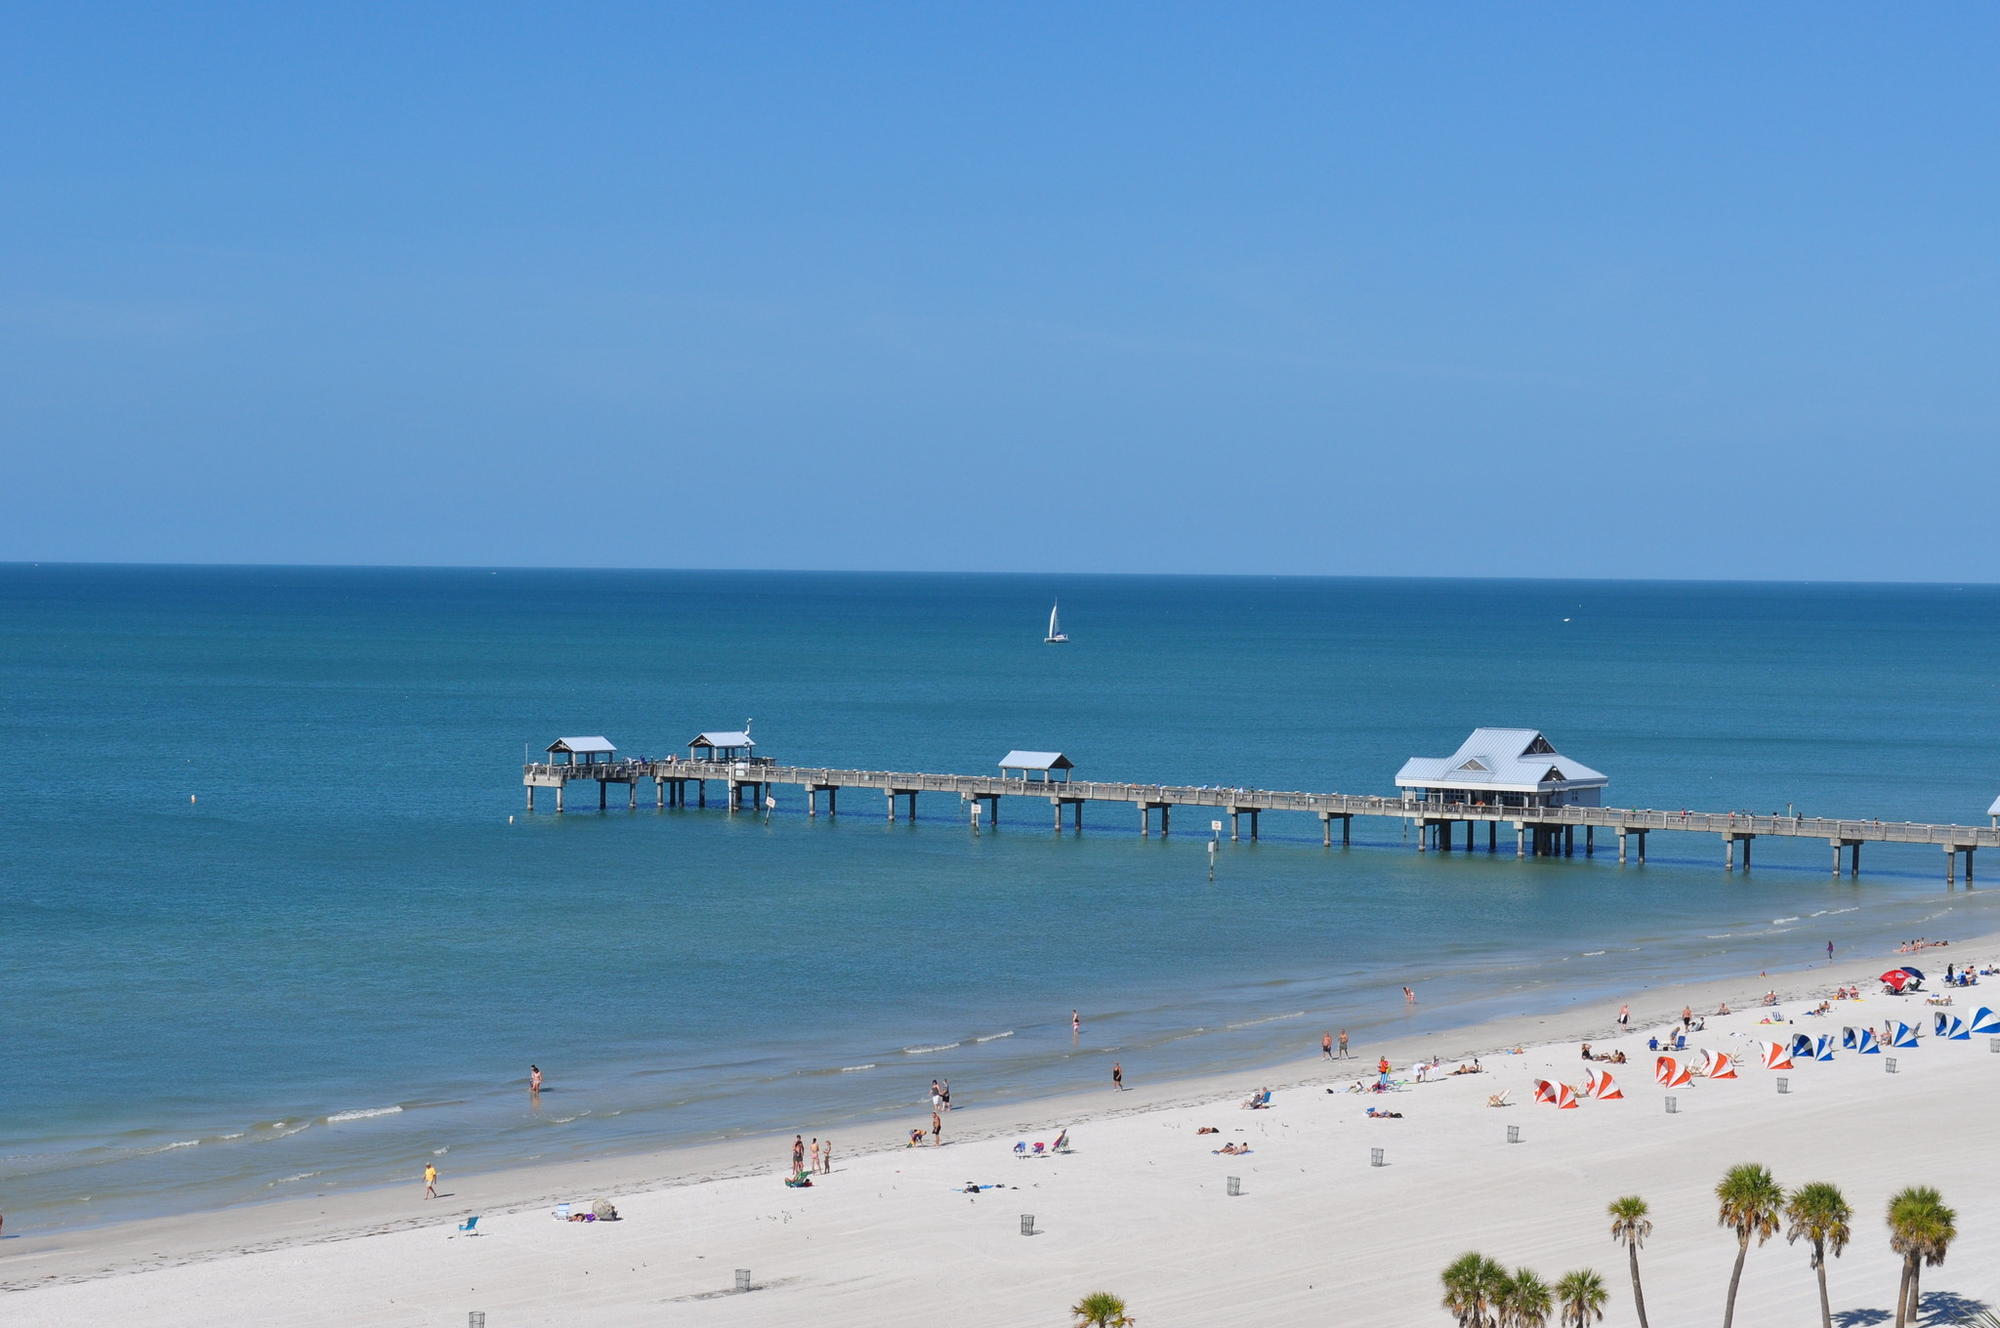 Clearwater selected as best beach in U.S. - SaintPetersBlog